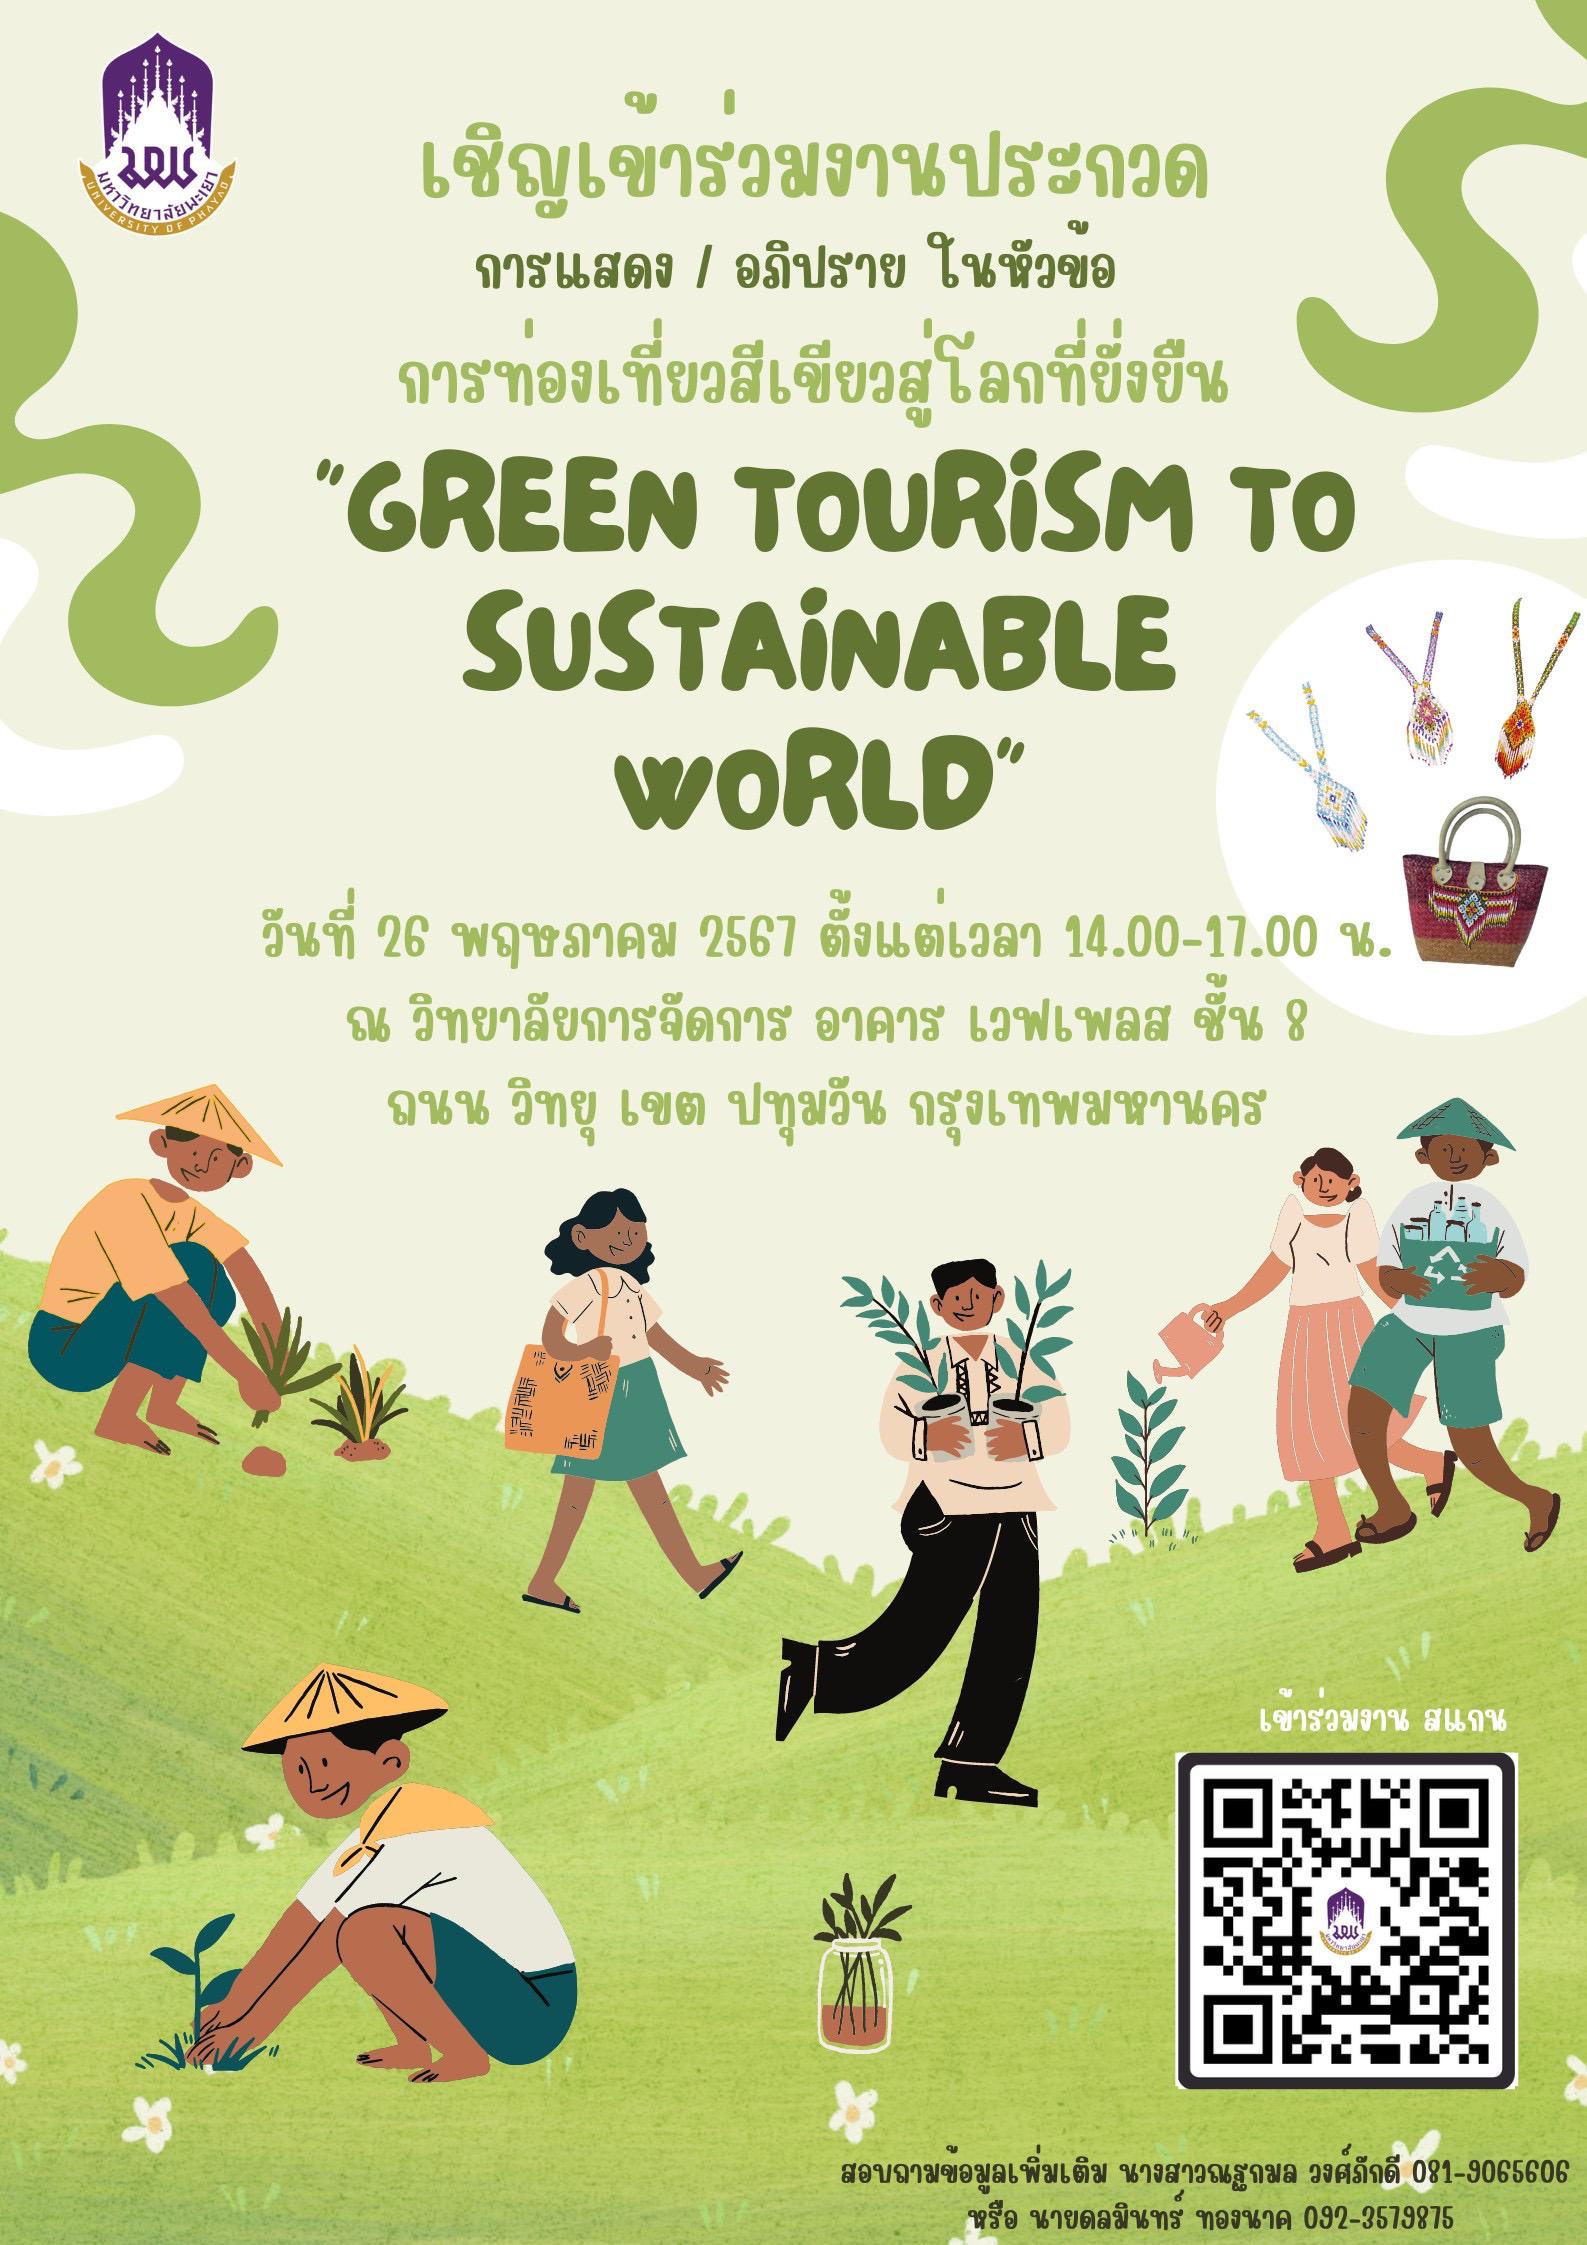 ขอเรียนเชิญทุกท่านที่มีความสนใจเข้าร่วมงานประกวดในหัวข้อเรื่อง “ การท่องเที่ยวสีเขียวสู่โลกที่ยั่งยืน Green tourism Sustainable ” 🌳